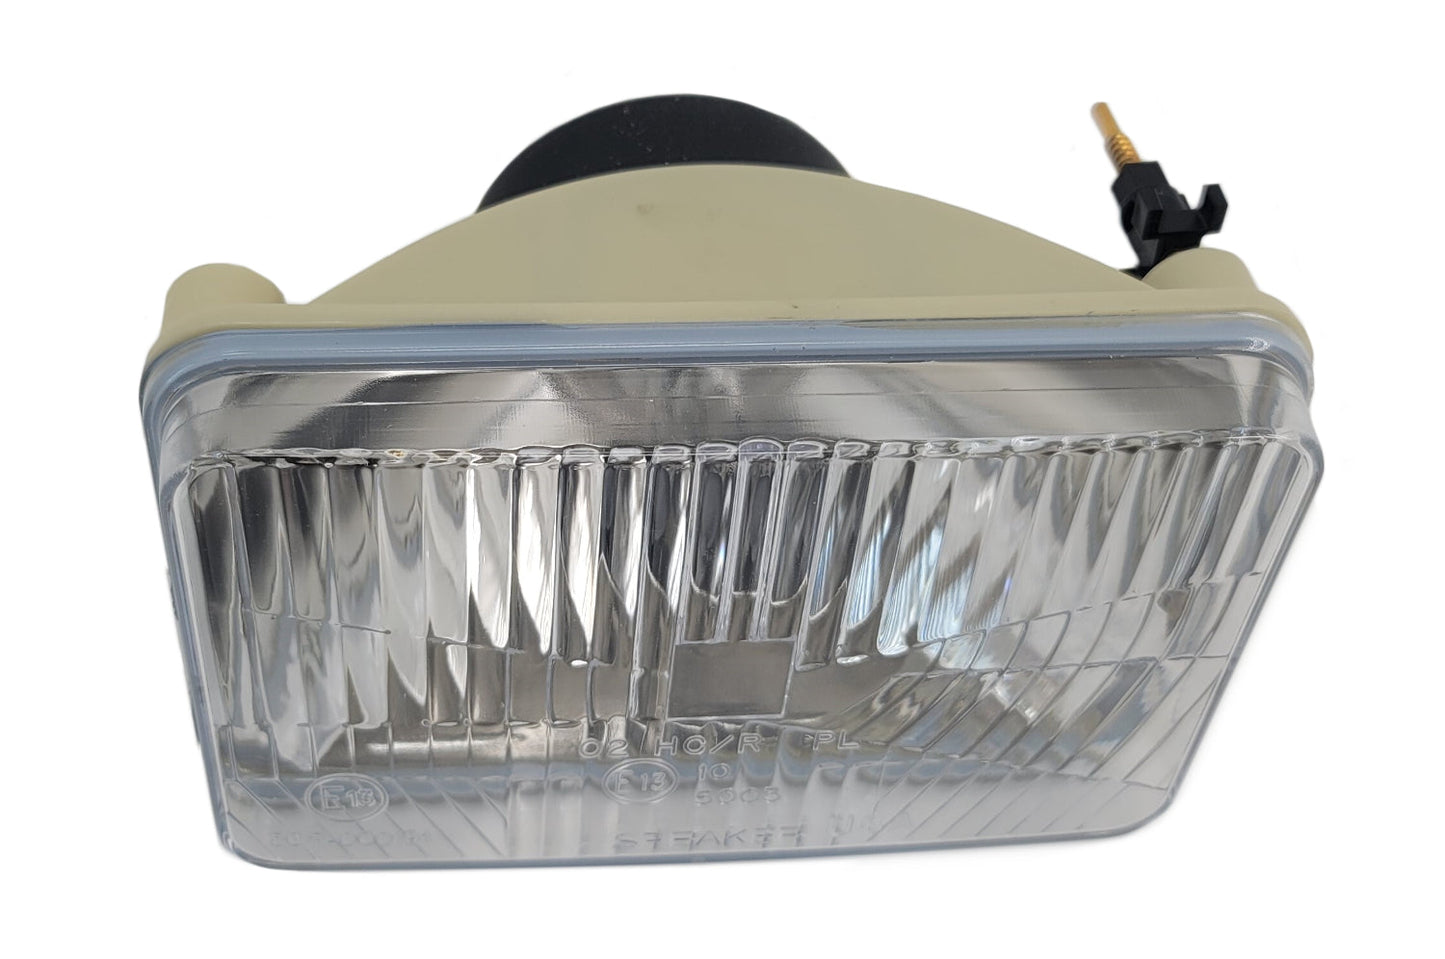 John Deere Original Equipment Headlight - AM120326